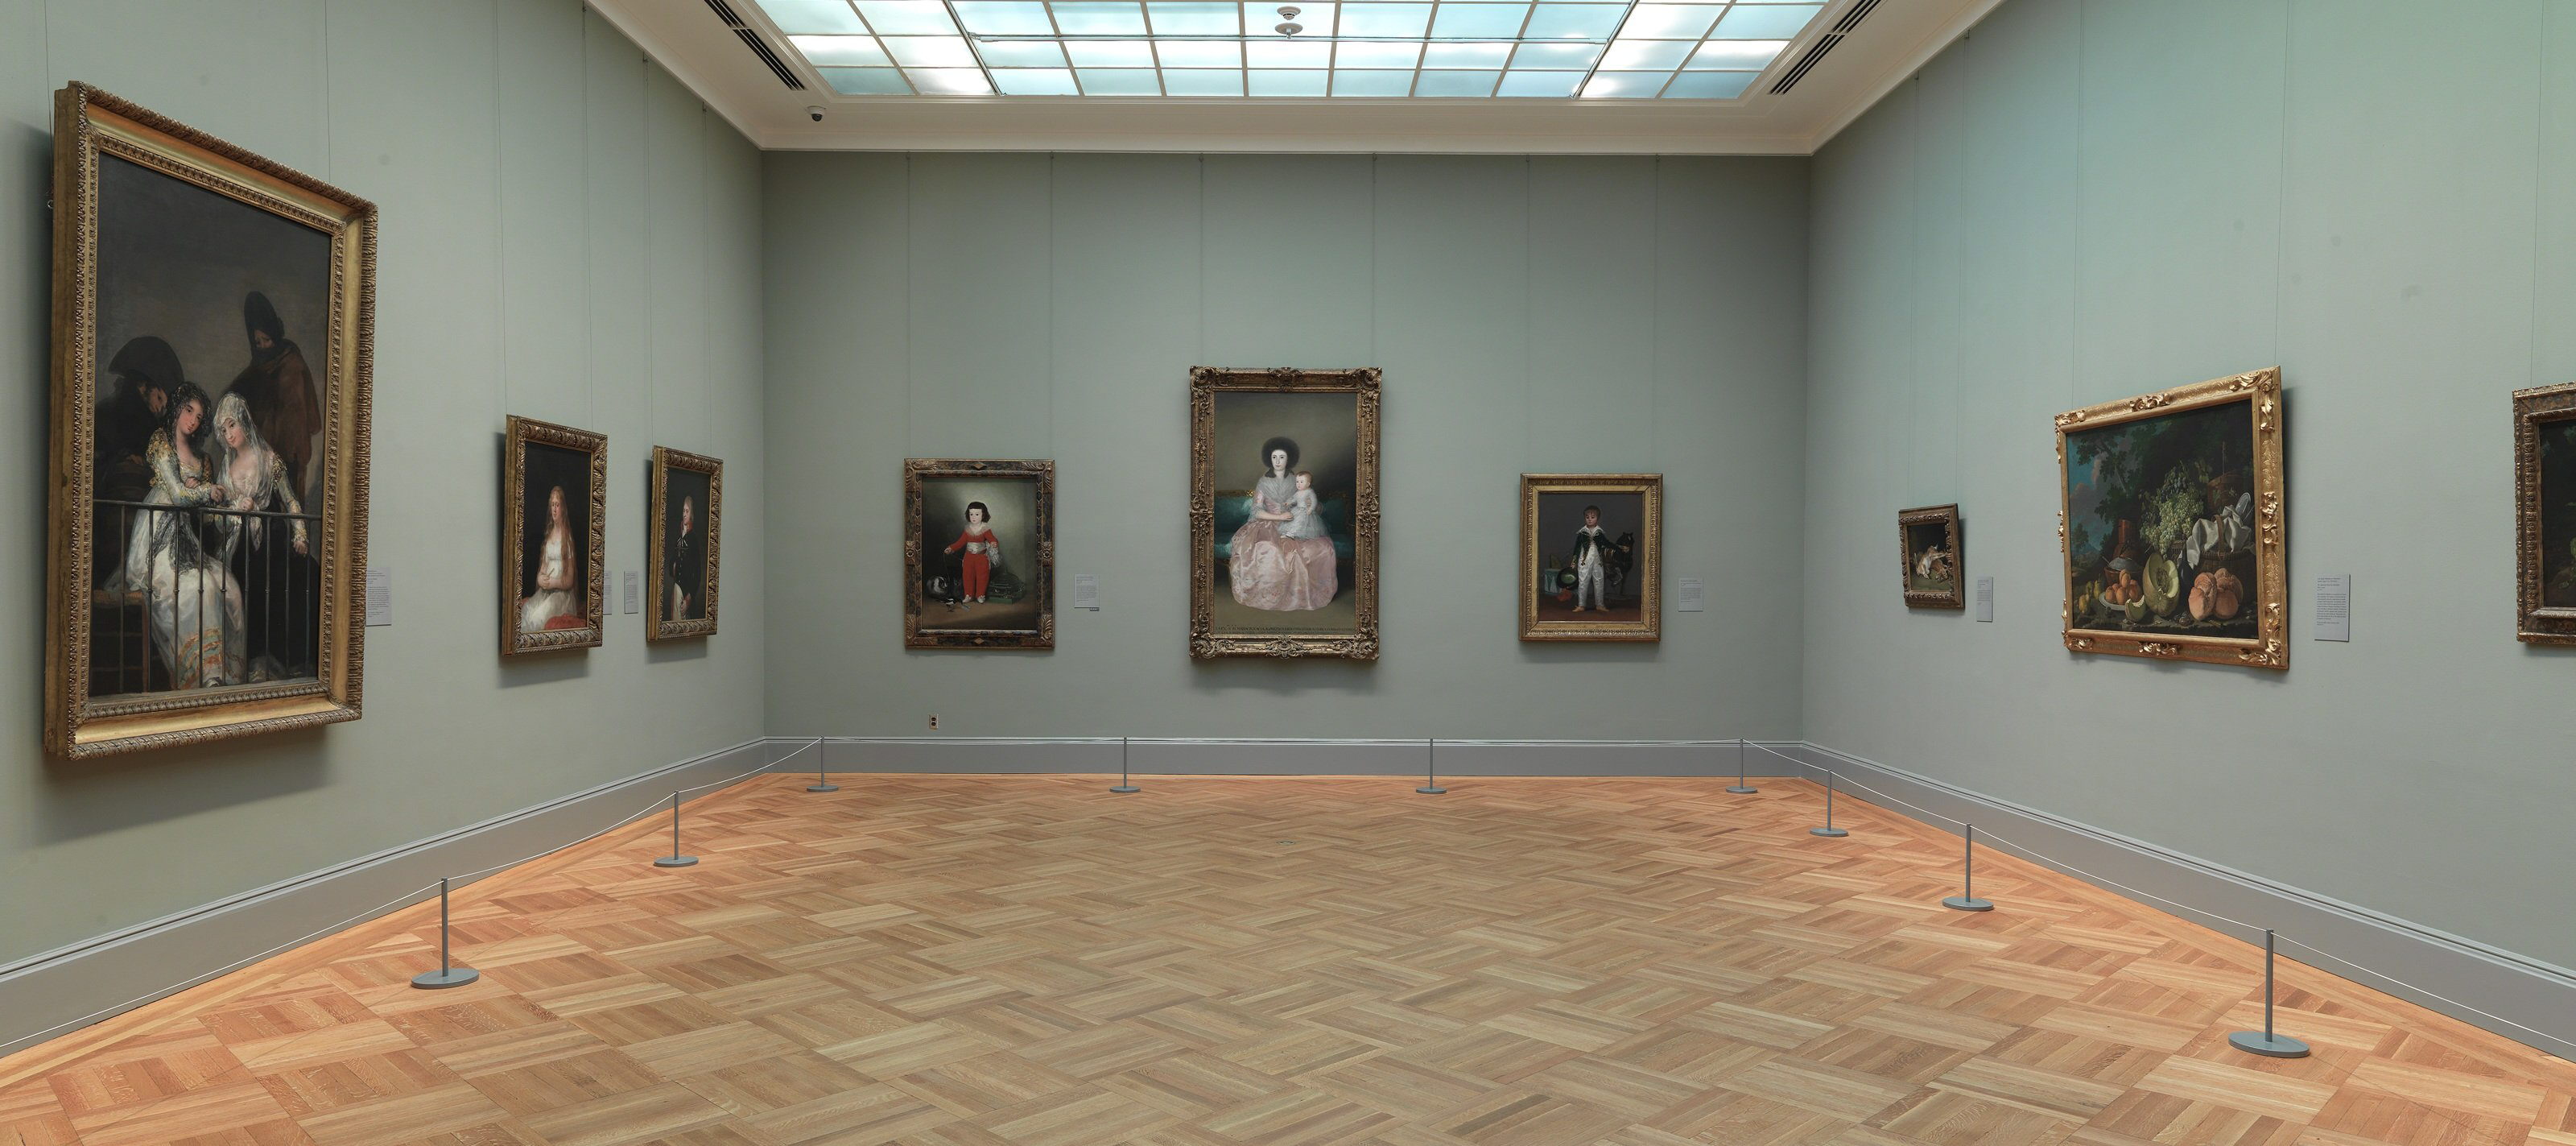 El arte español gana espacio en el museo Metropolitan de Nueva York